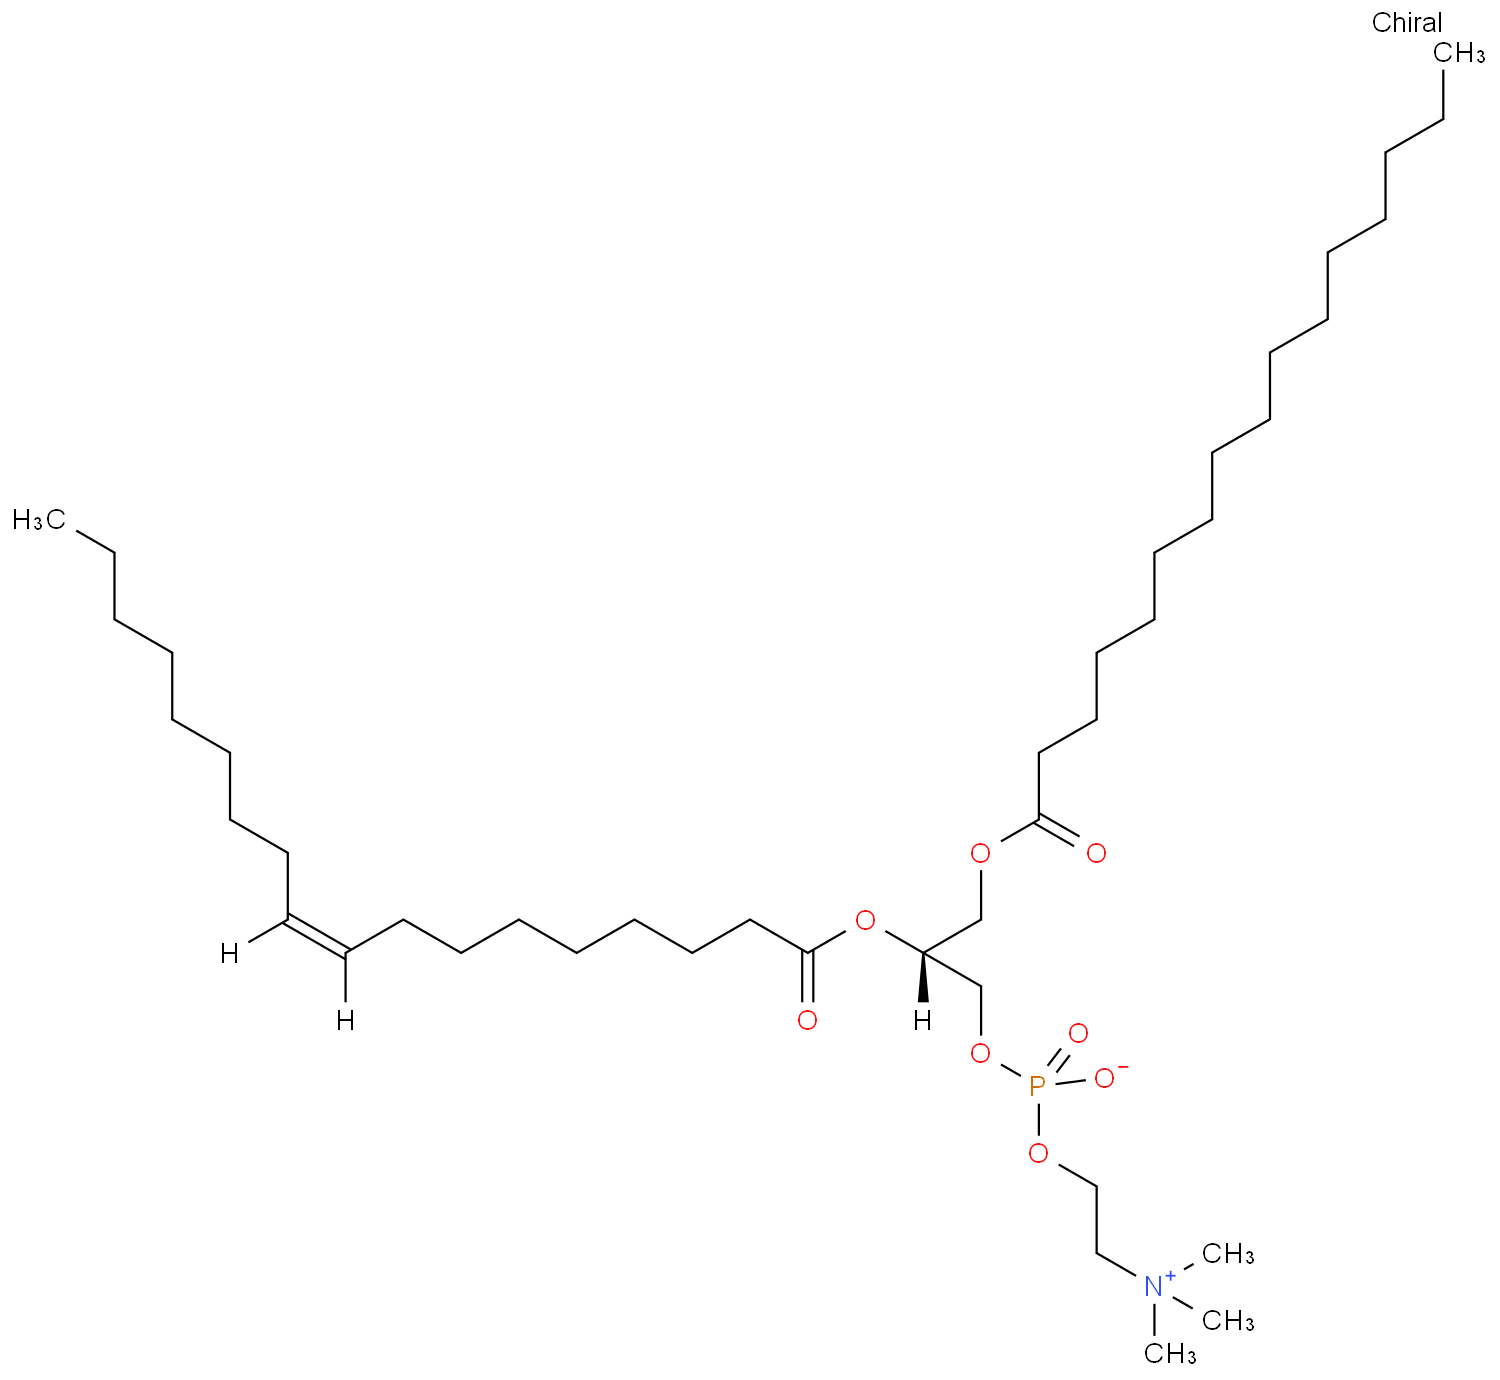 1-palmitoyl-2-oleoyl-sn-glycero-3-phosphocholine (POPC)  